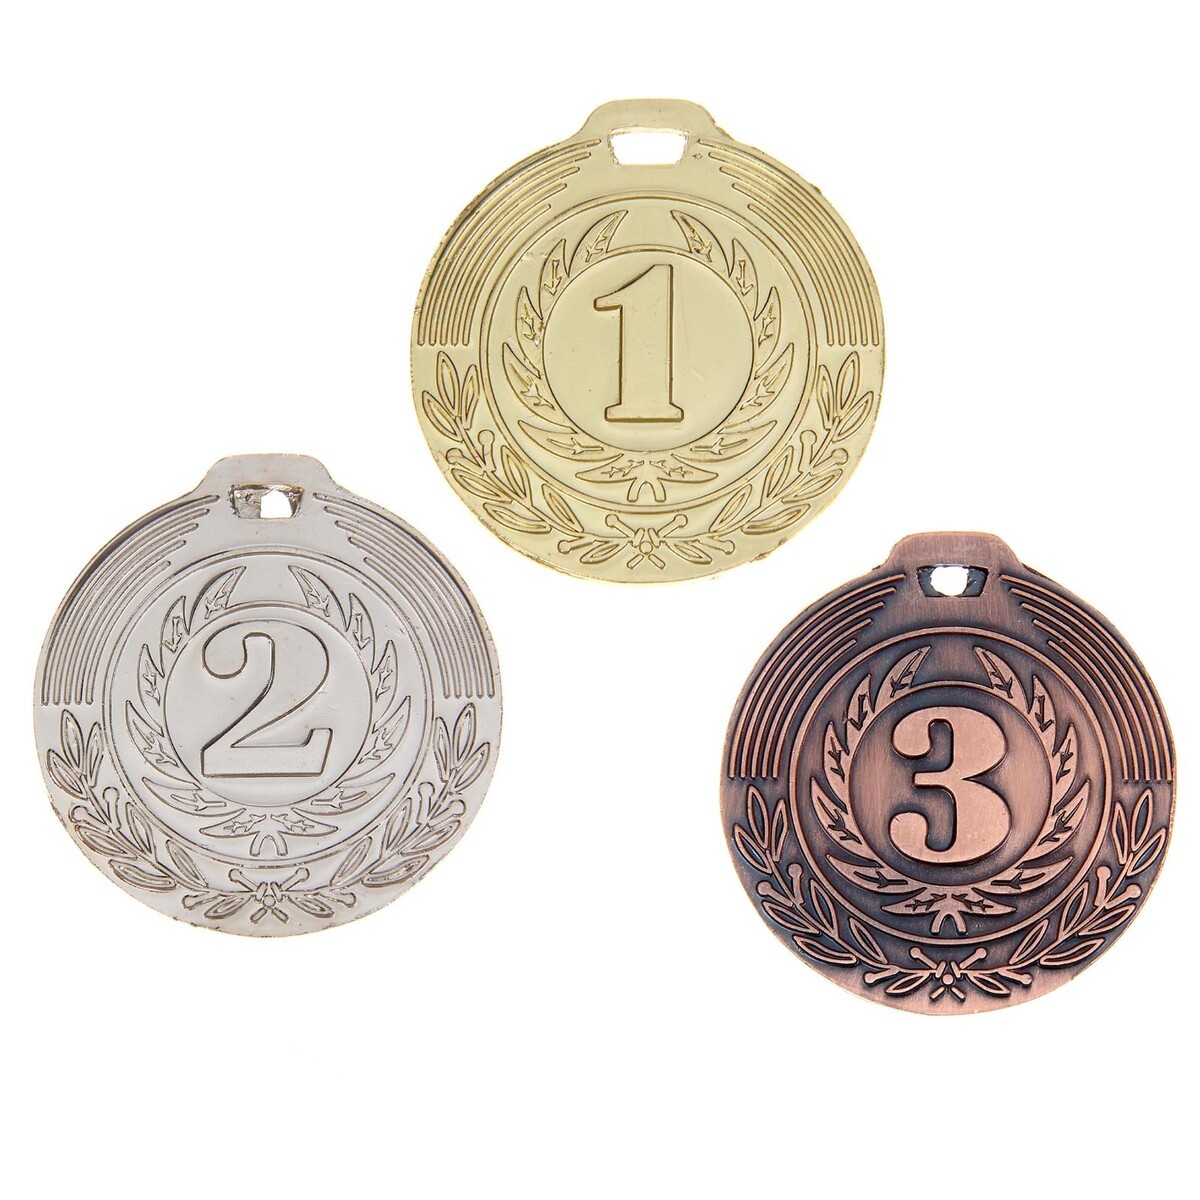 Медаль призовая 021 диам 4 см. 3 место. цвет бронз. без ленты медаль призовая 055 диам 4 5 см 3 место бронз без ленты